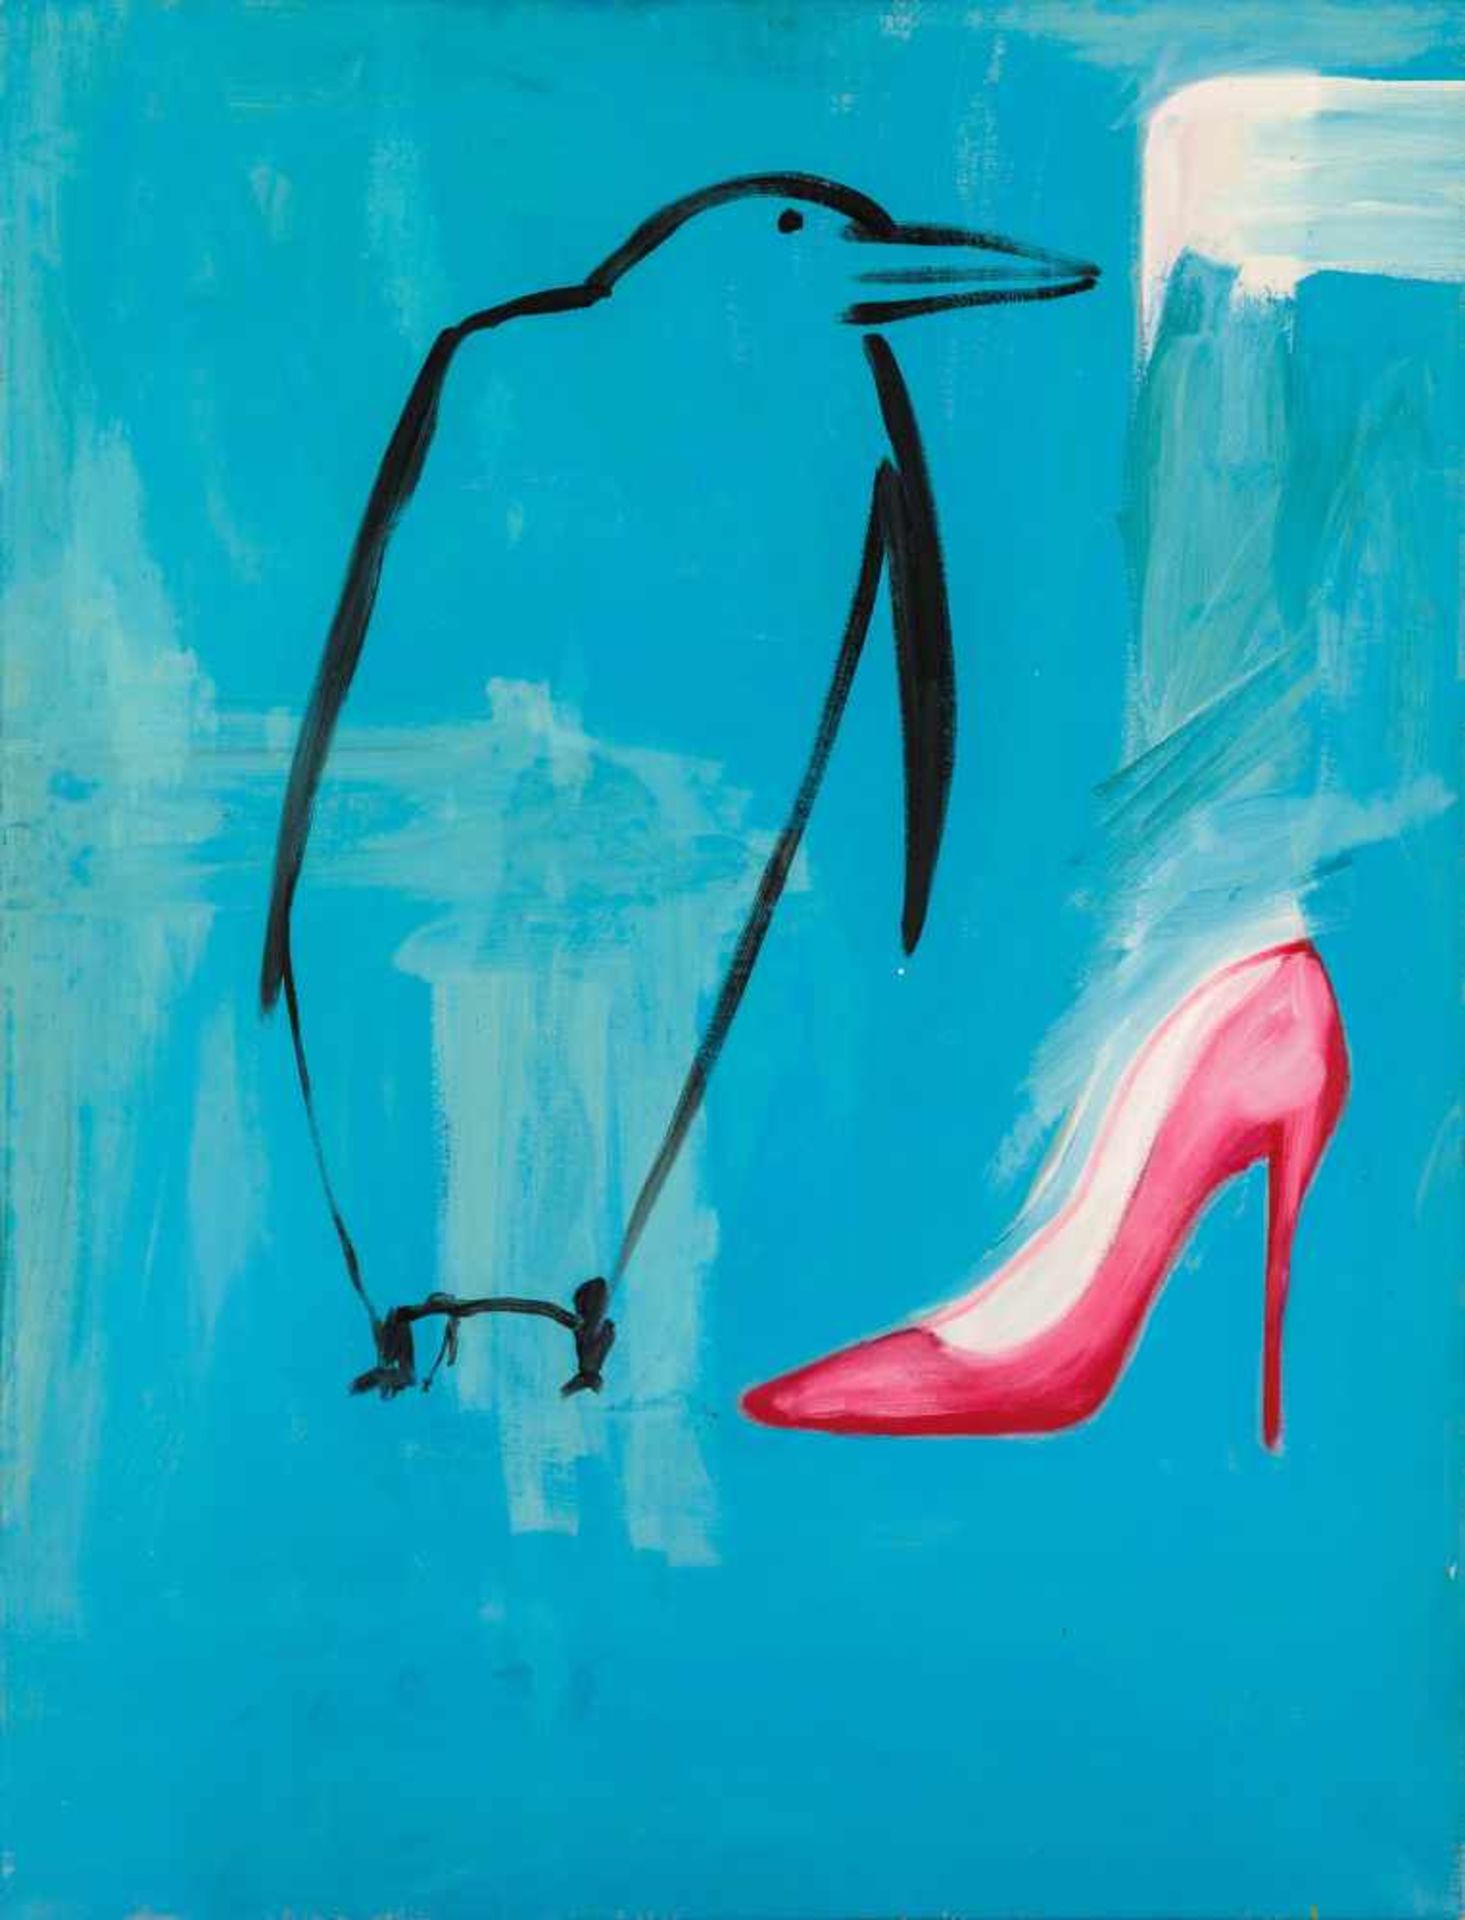 Ronald KodritschLeoben 1970 *Pinguin und SchuhÖl auf Leinwand / oil on canvas105 x 80